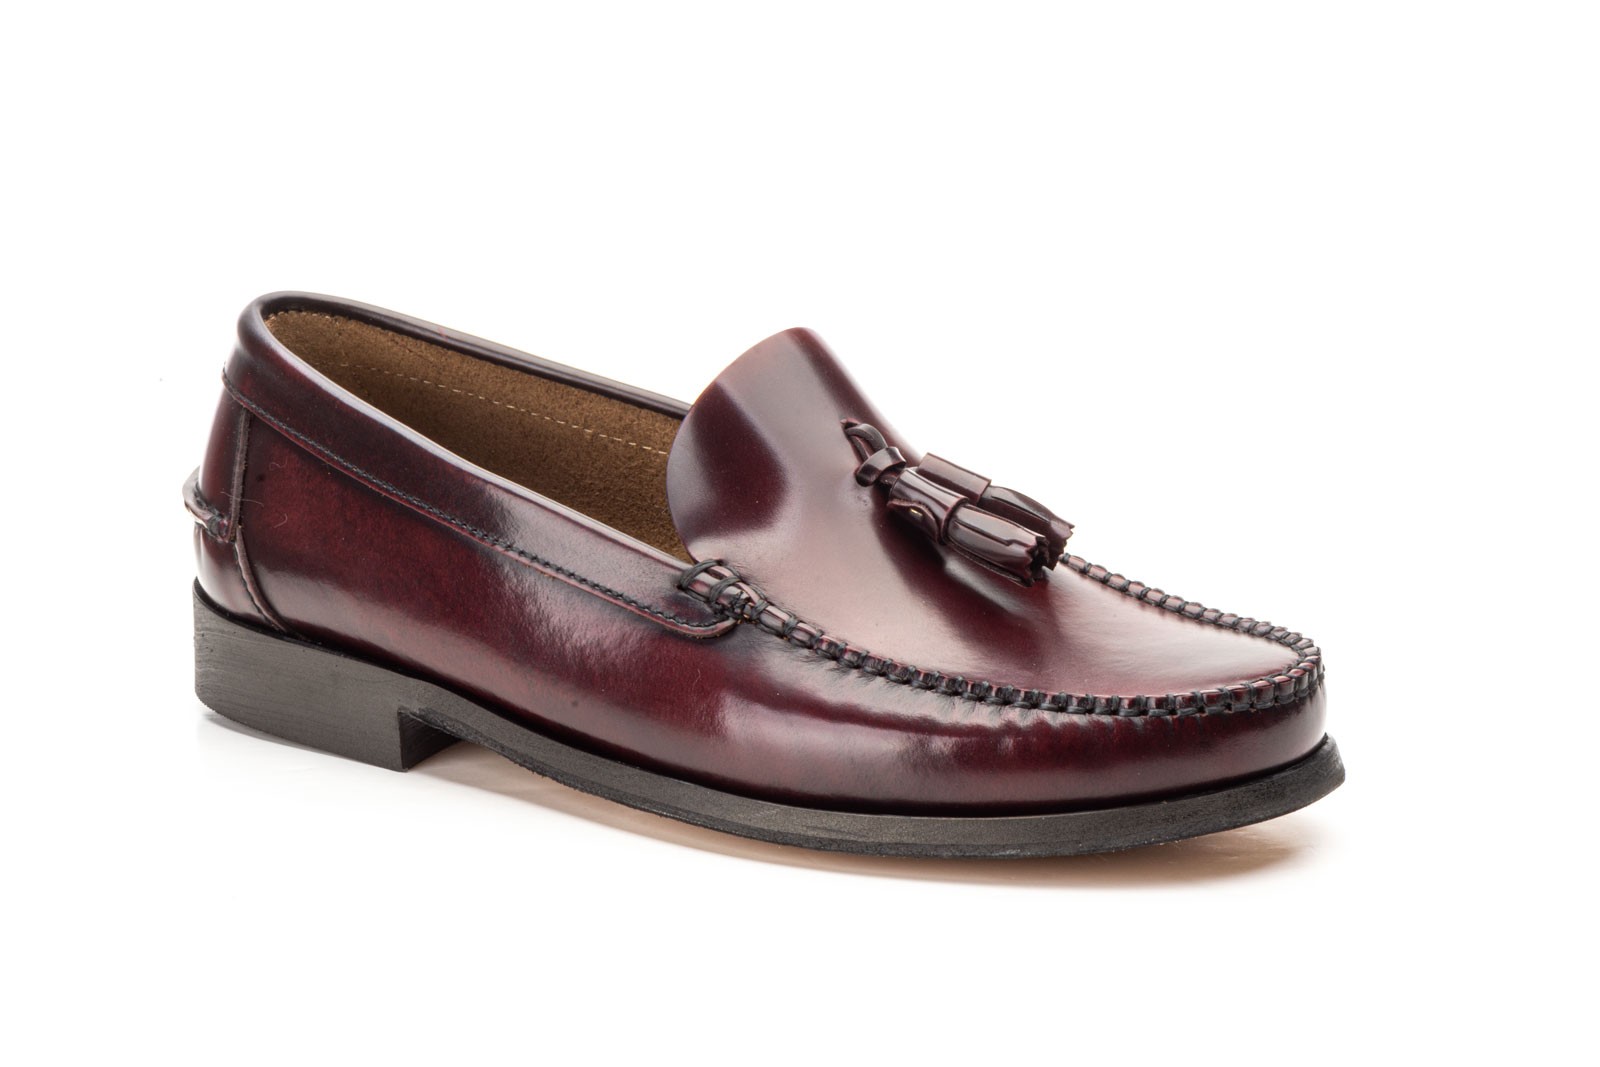 EE Exclusive Zapatos Castellanos hombre Florentick 103-FBS color burdeos borlas